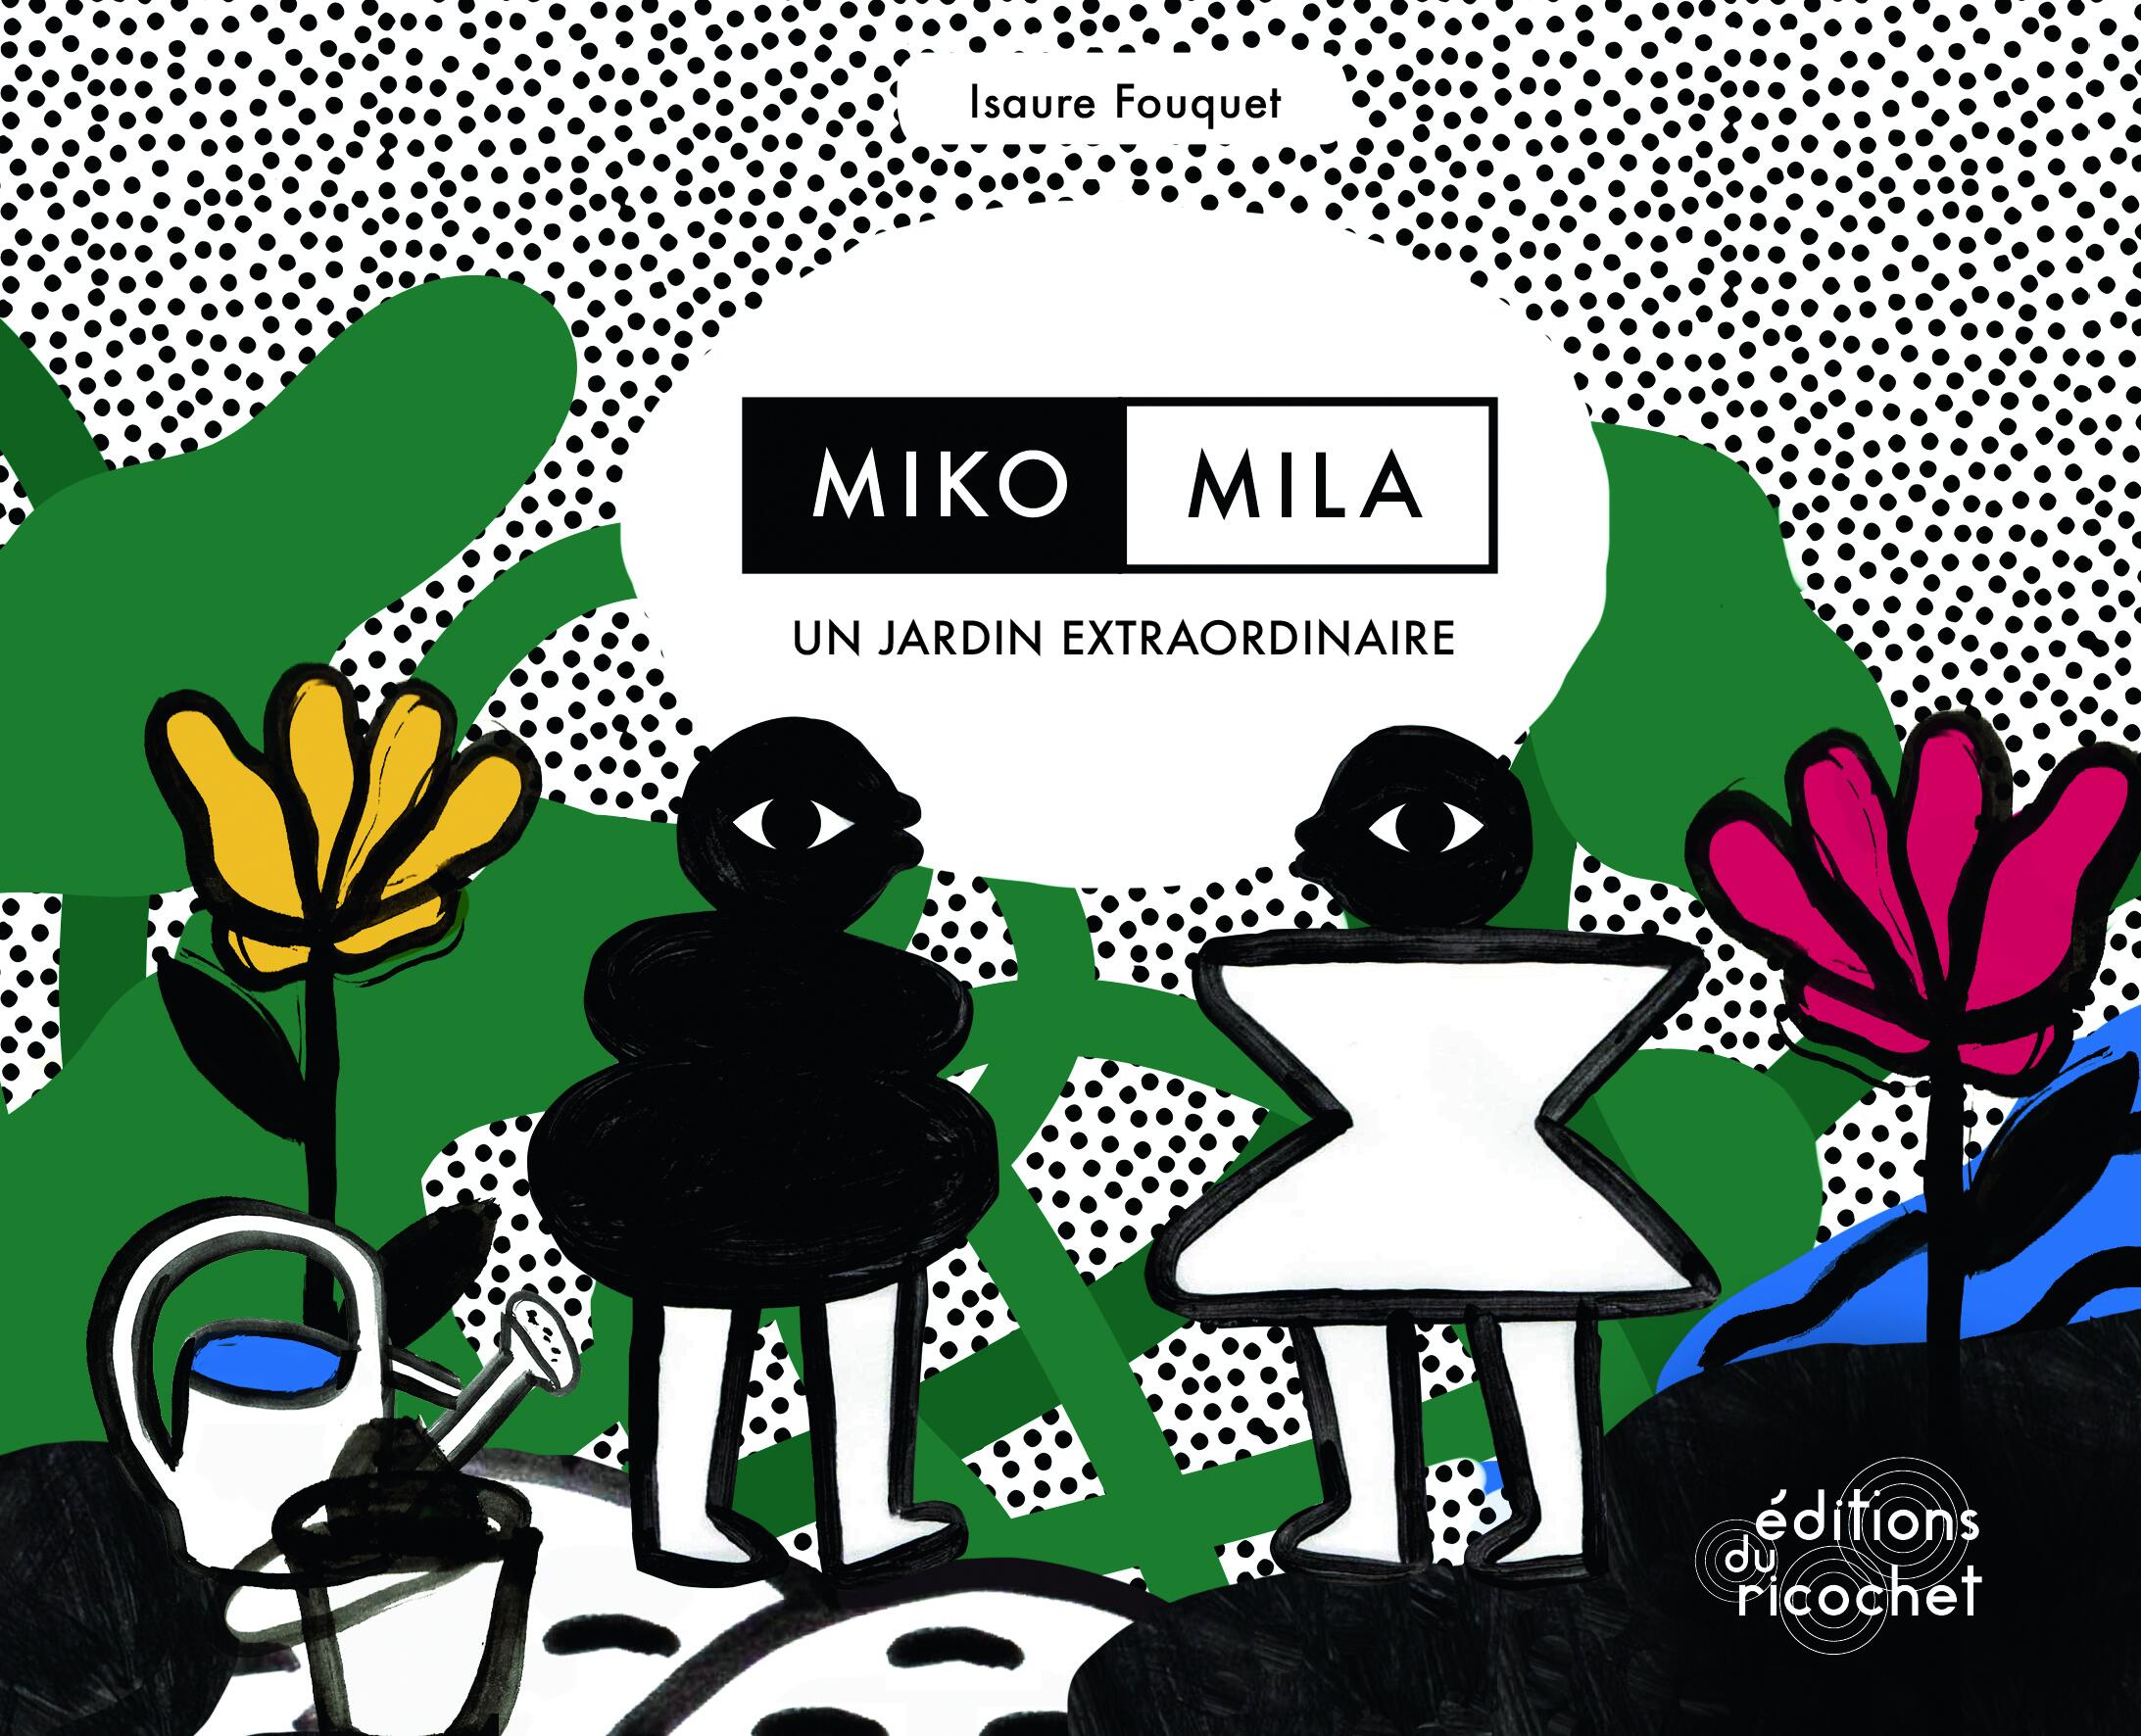 Miko, Mila, an Extraordinary Garden